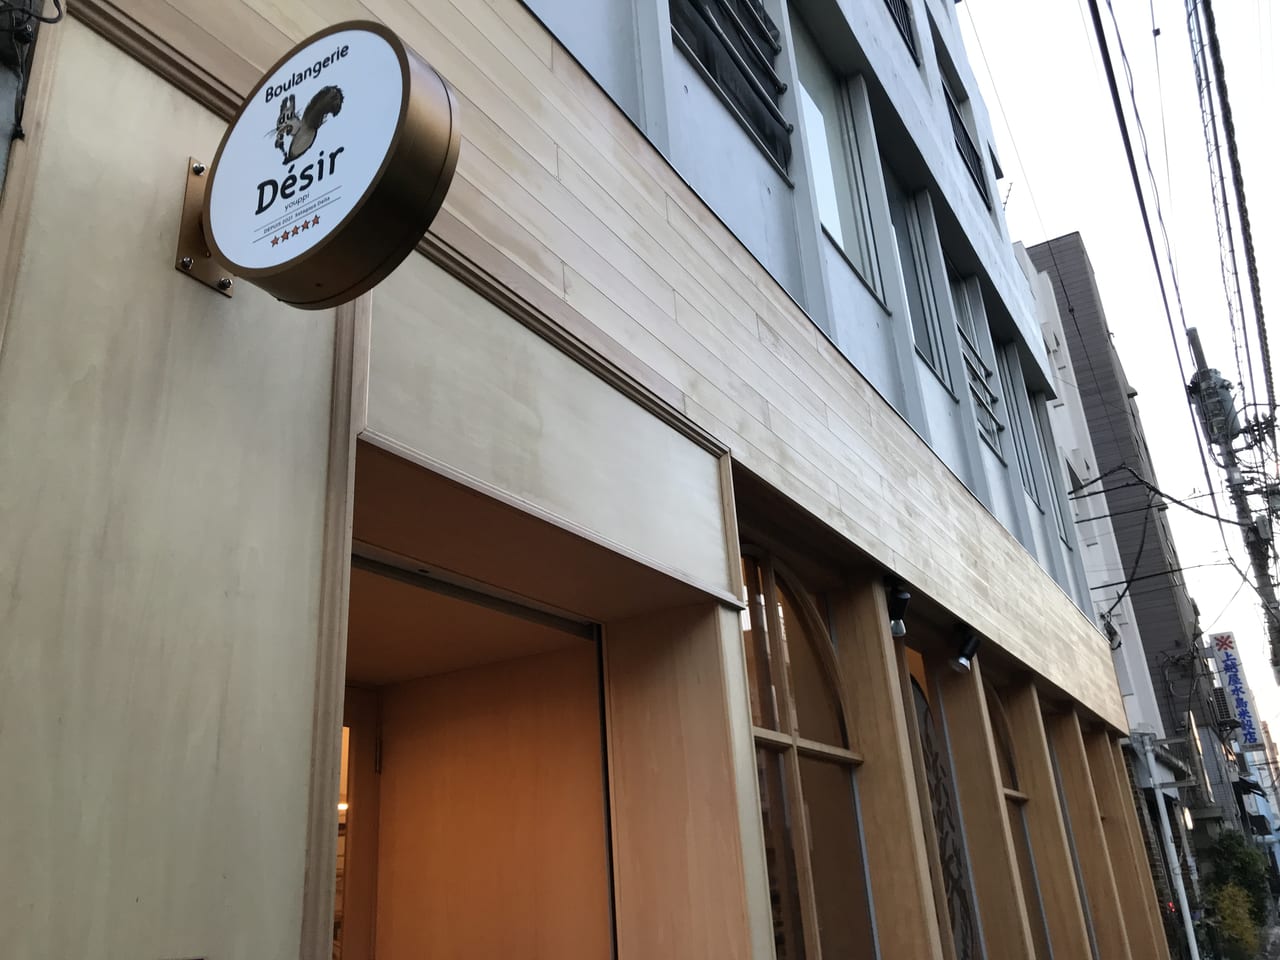 世田谷区代田に素材にこだわった函館出身のオーナーさんのブーランジェリー ドゥ デジールが2021年12月17日オープンしました。